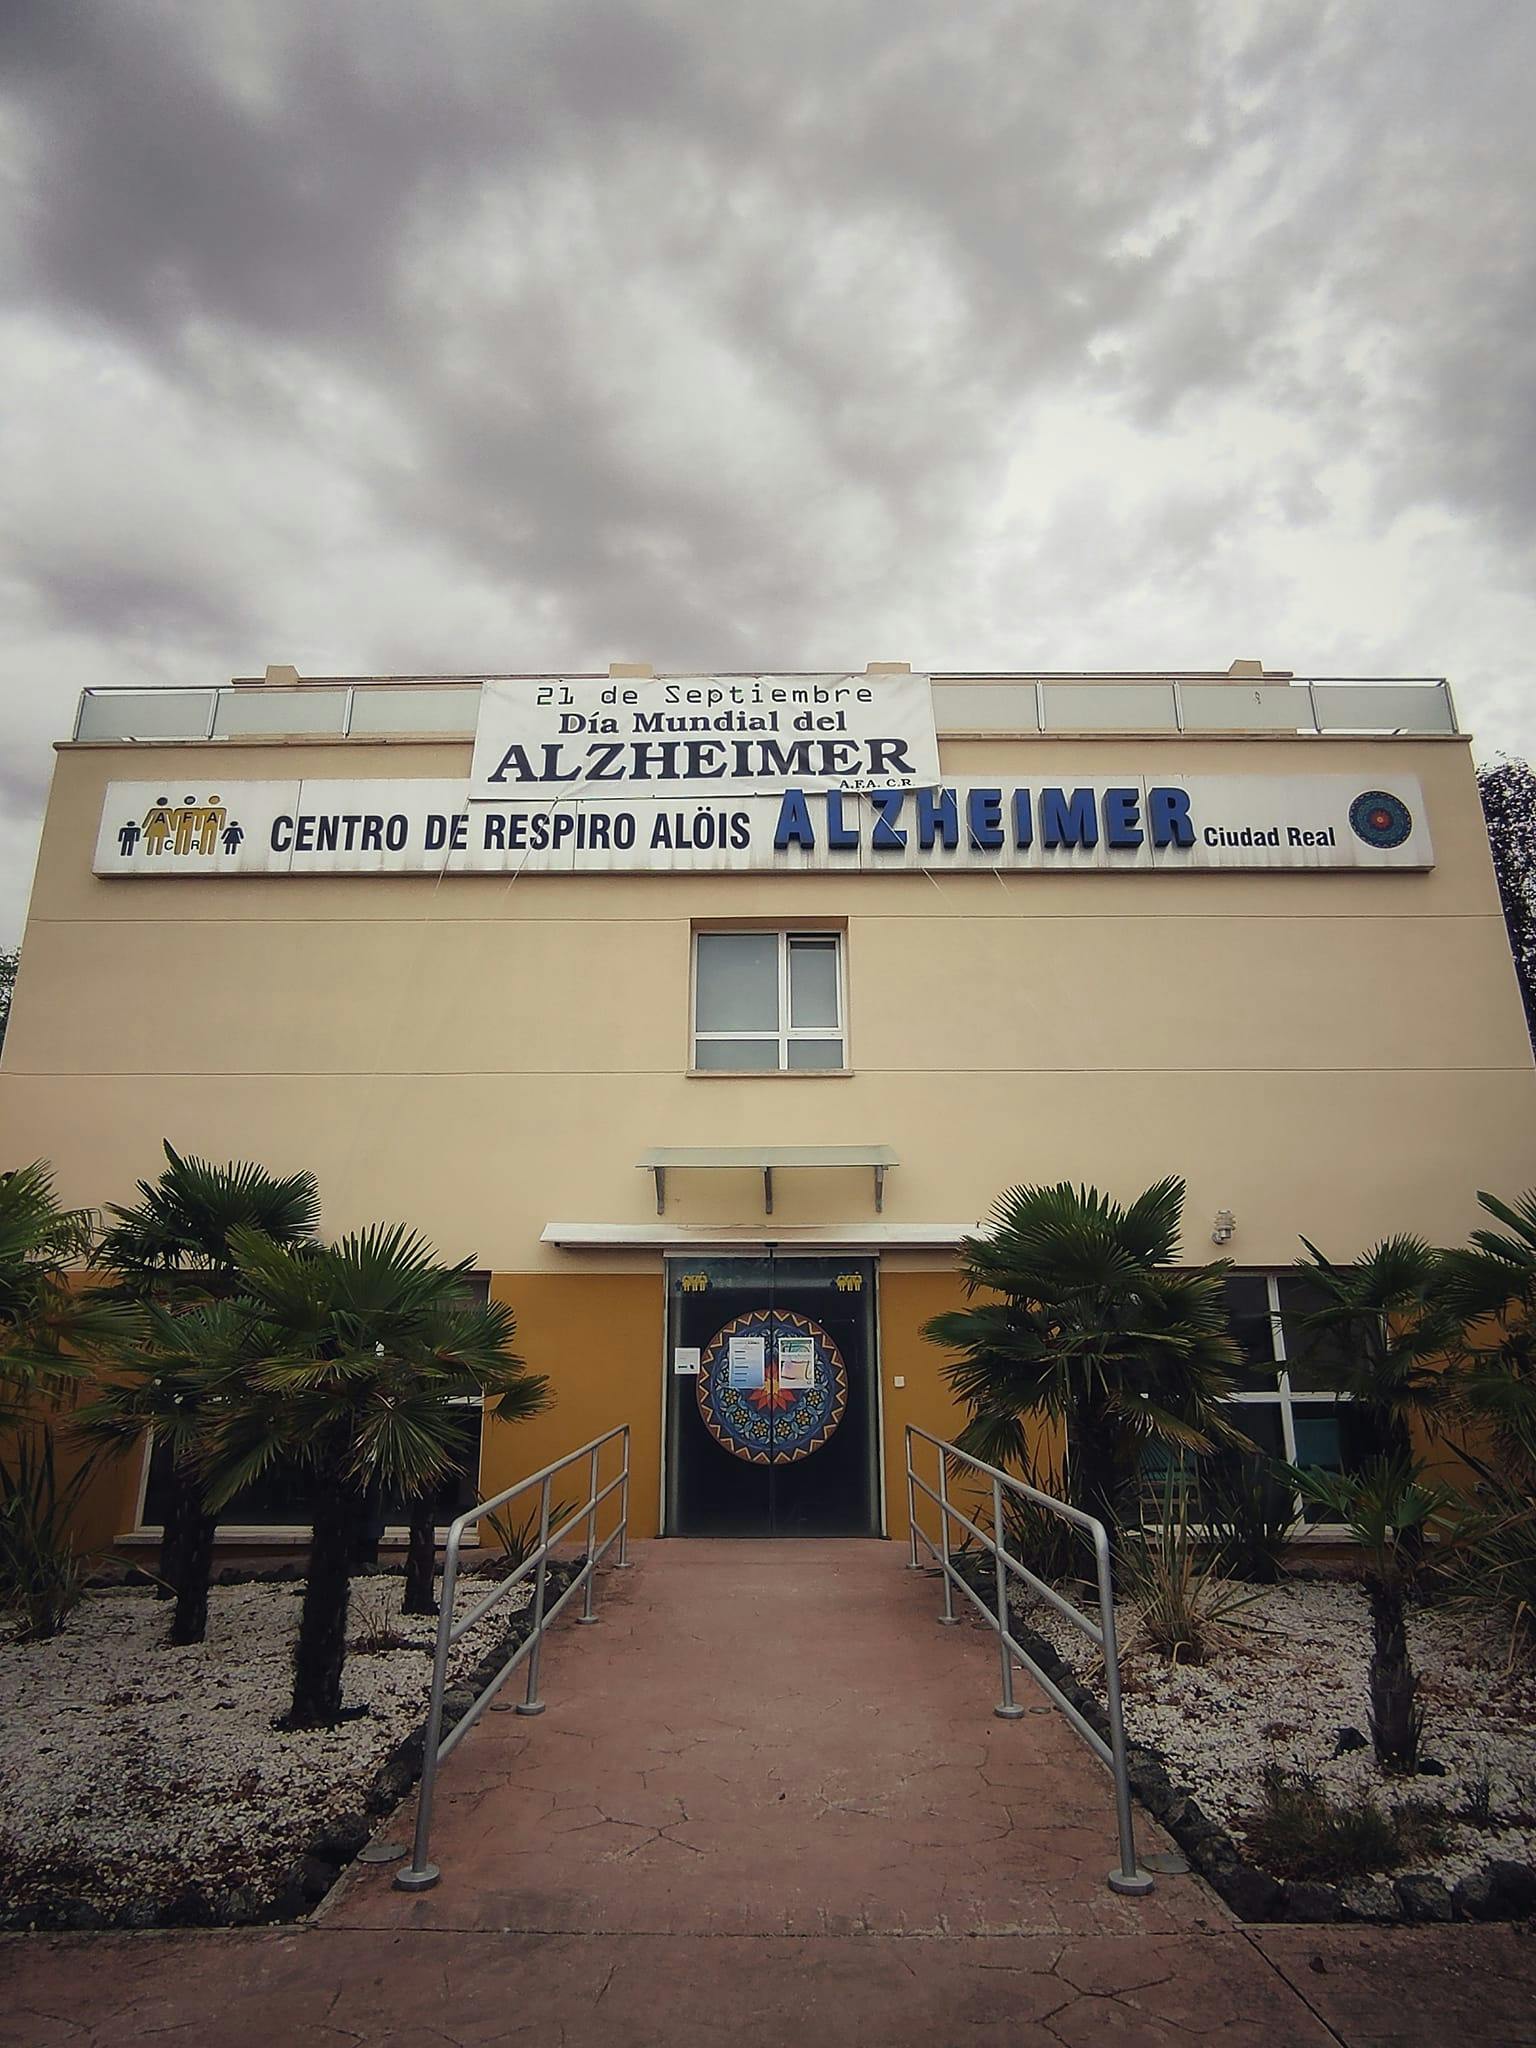 Centro De Respiro Alois Alzheimer